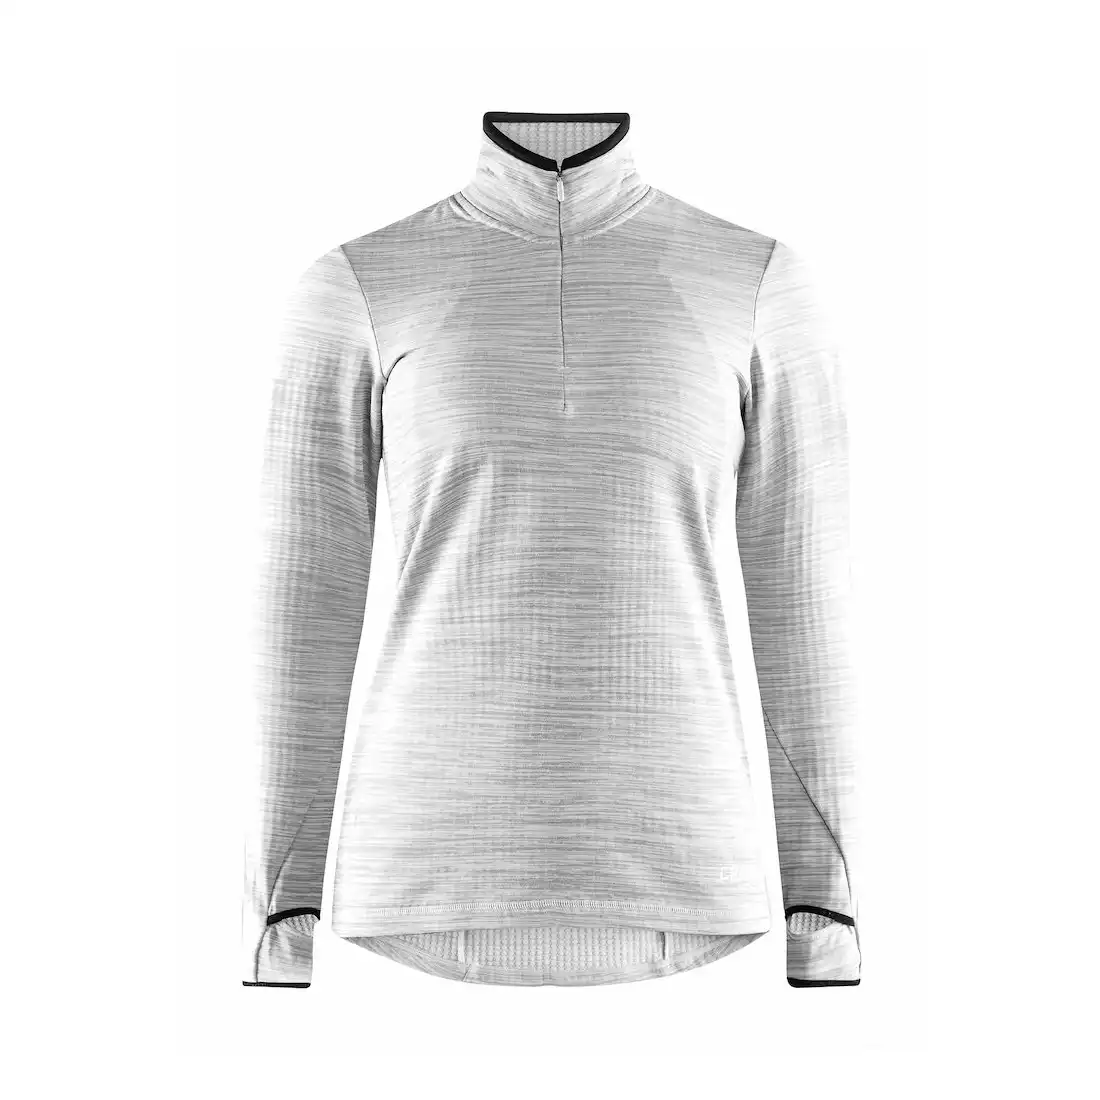 CRAFT GRID damska bluza sportowa jasny melanż 1906644-950000